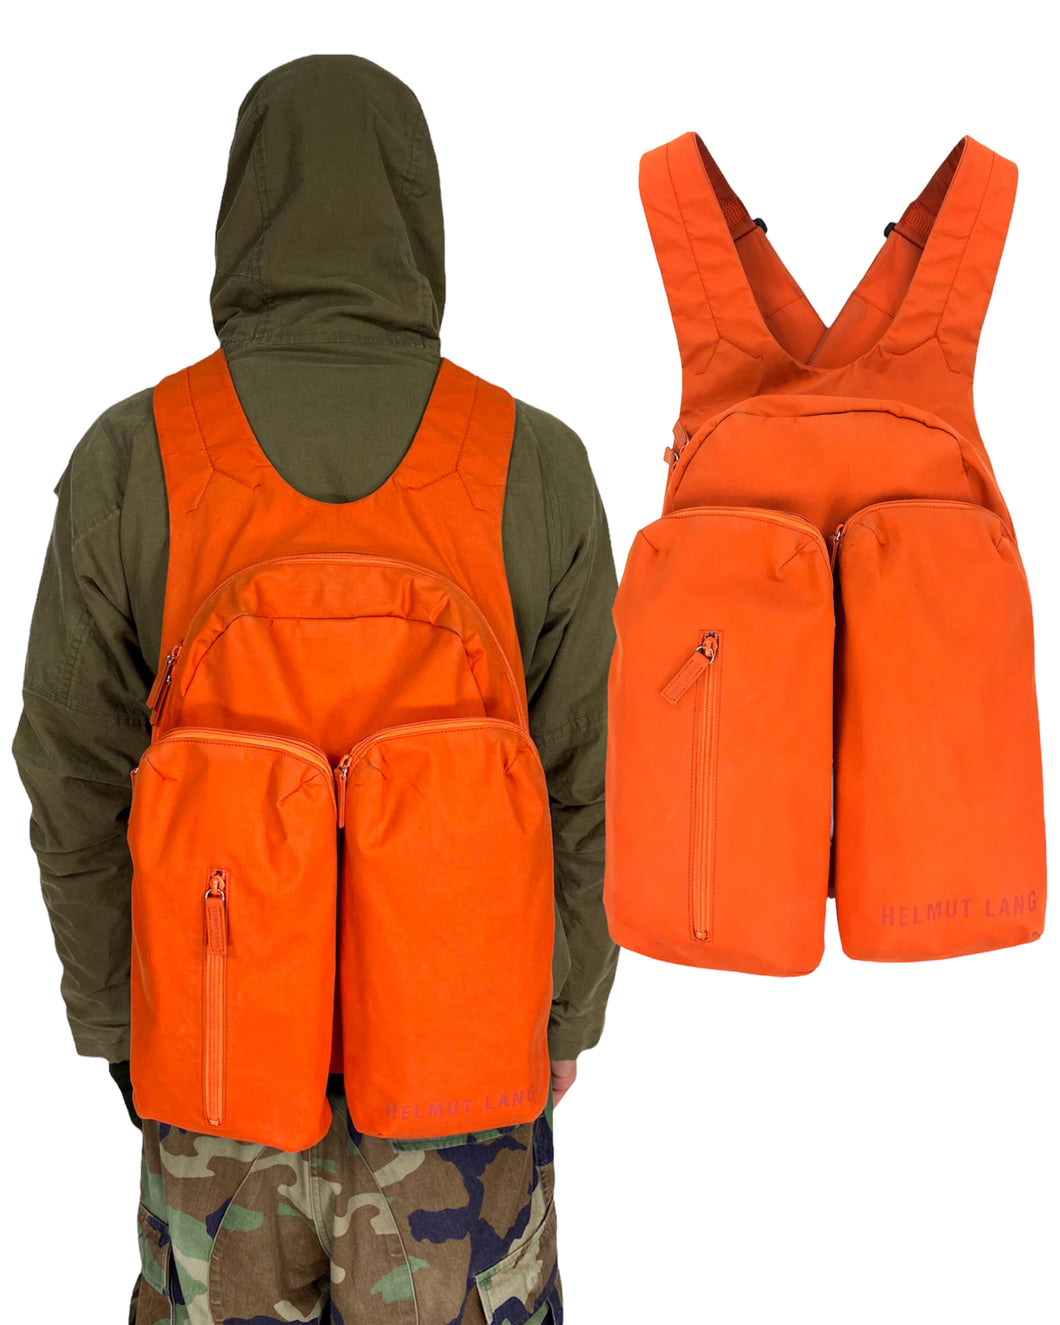 HELMUT LANG Cargo Vest/Backpack (FW1999)